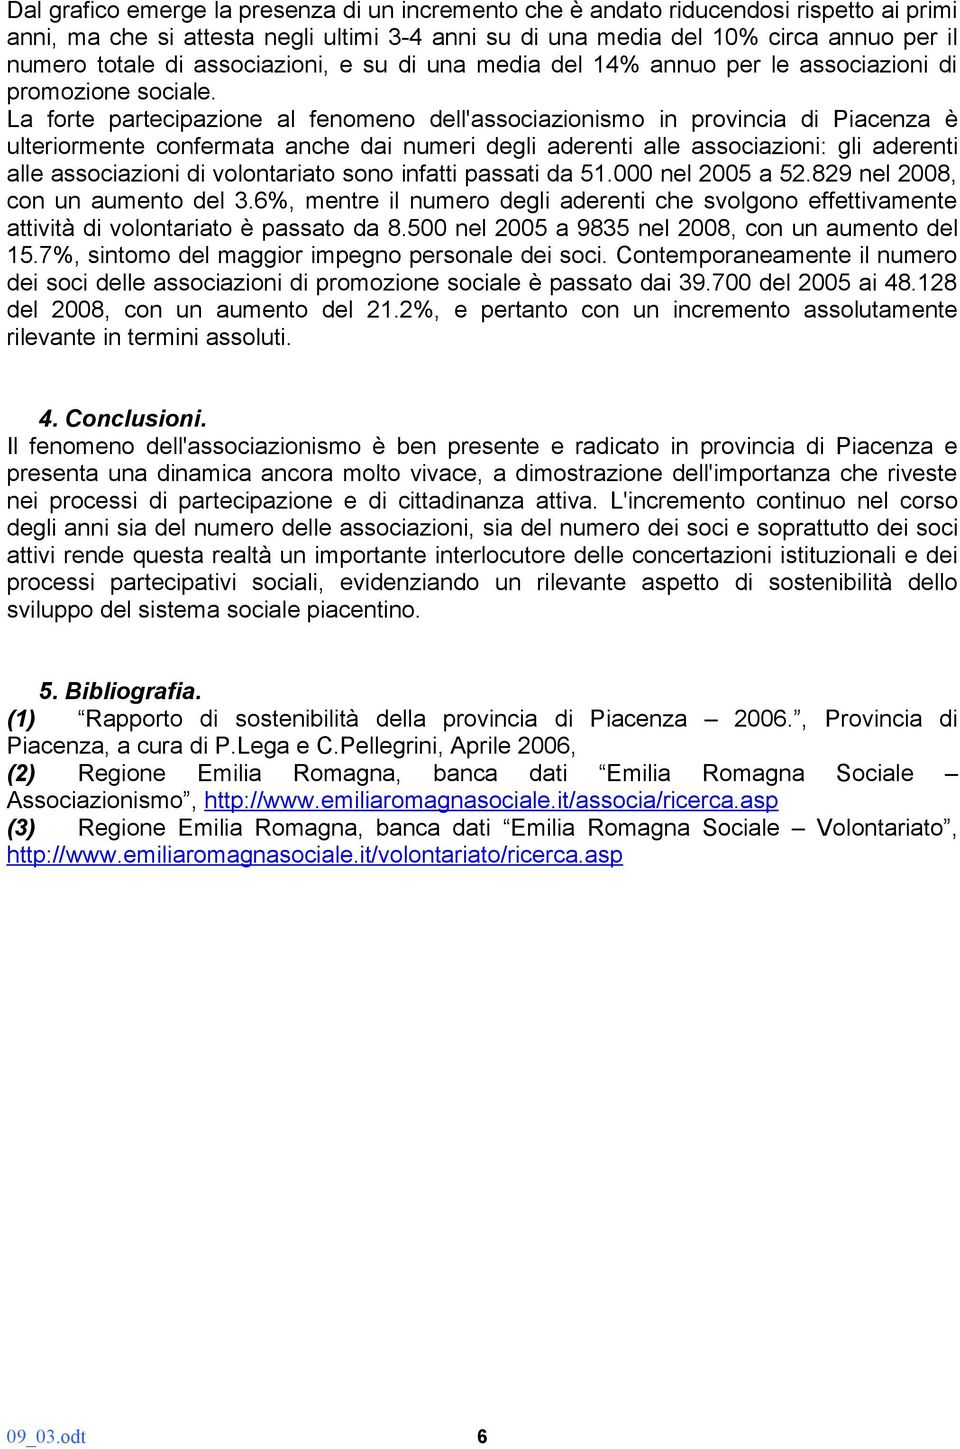 La forte partecipazione al fenomeno dell'associazionismo in provincia di Piacenza è ulteriormente confermata anche dai numeri degli aderenti alle associazioni: gli aderenti alle associazioni di